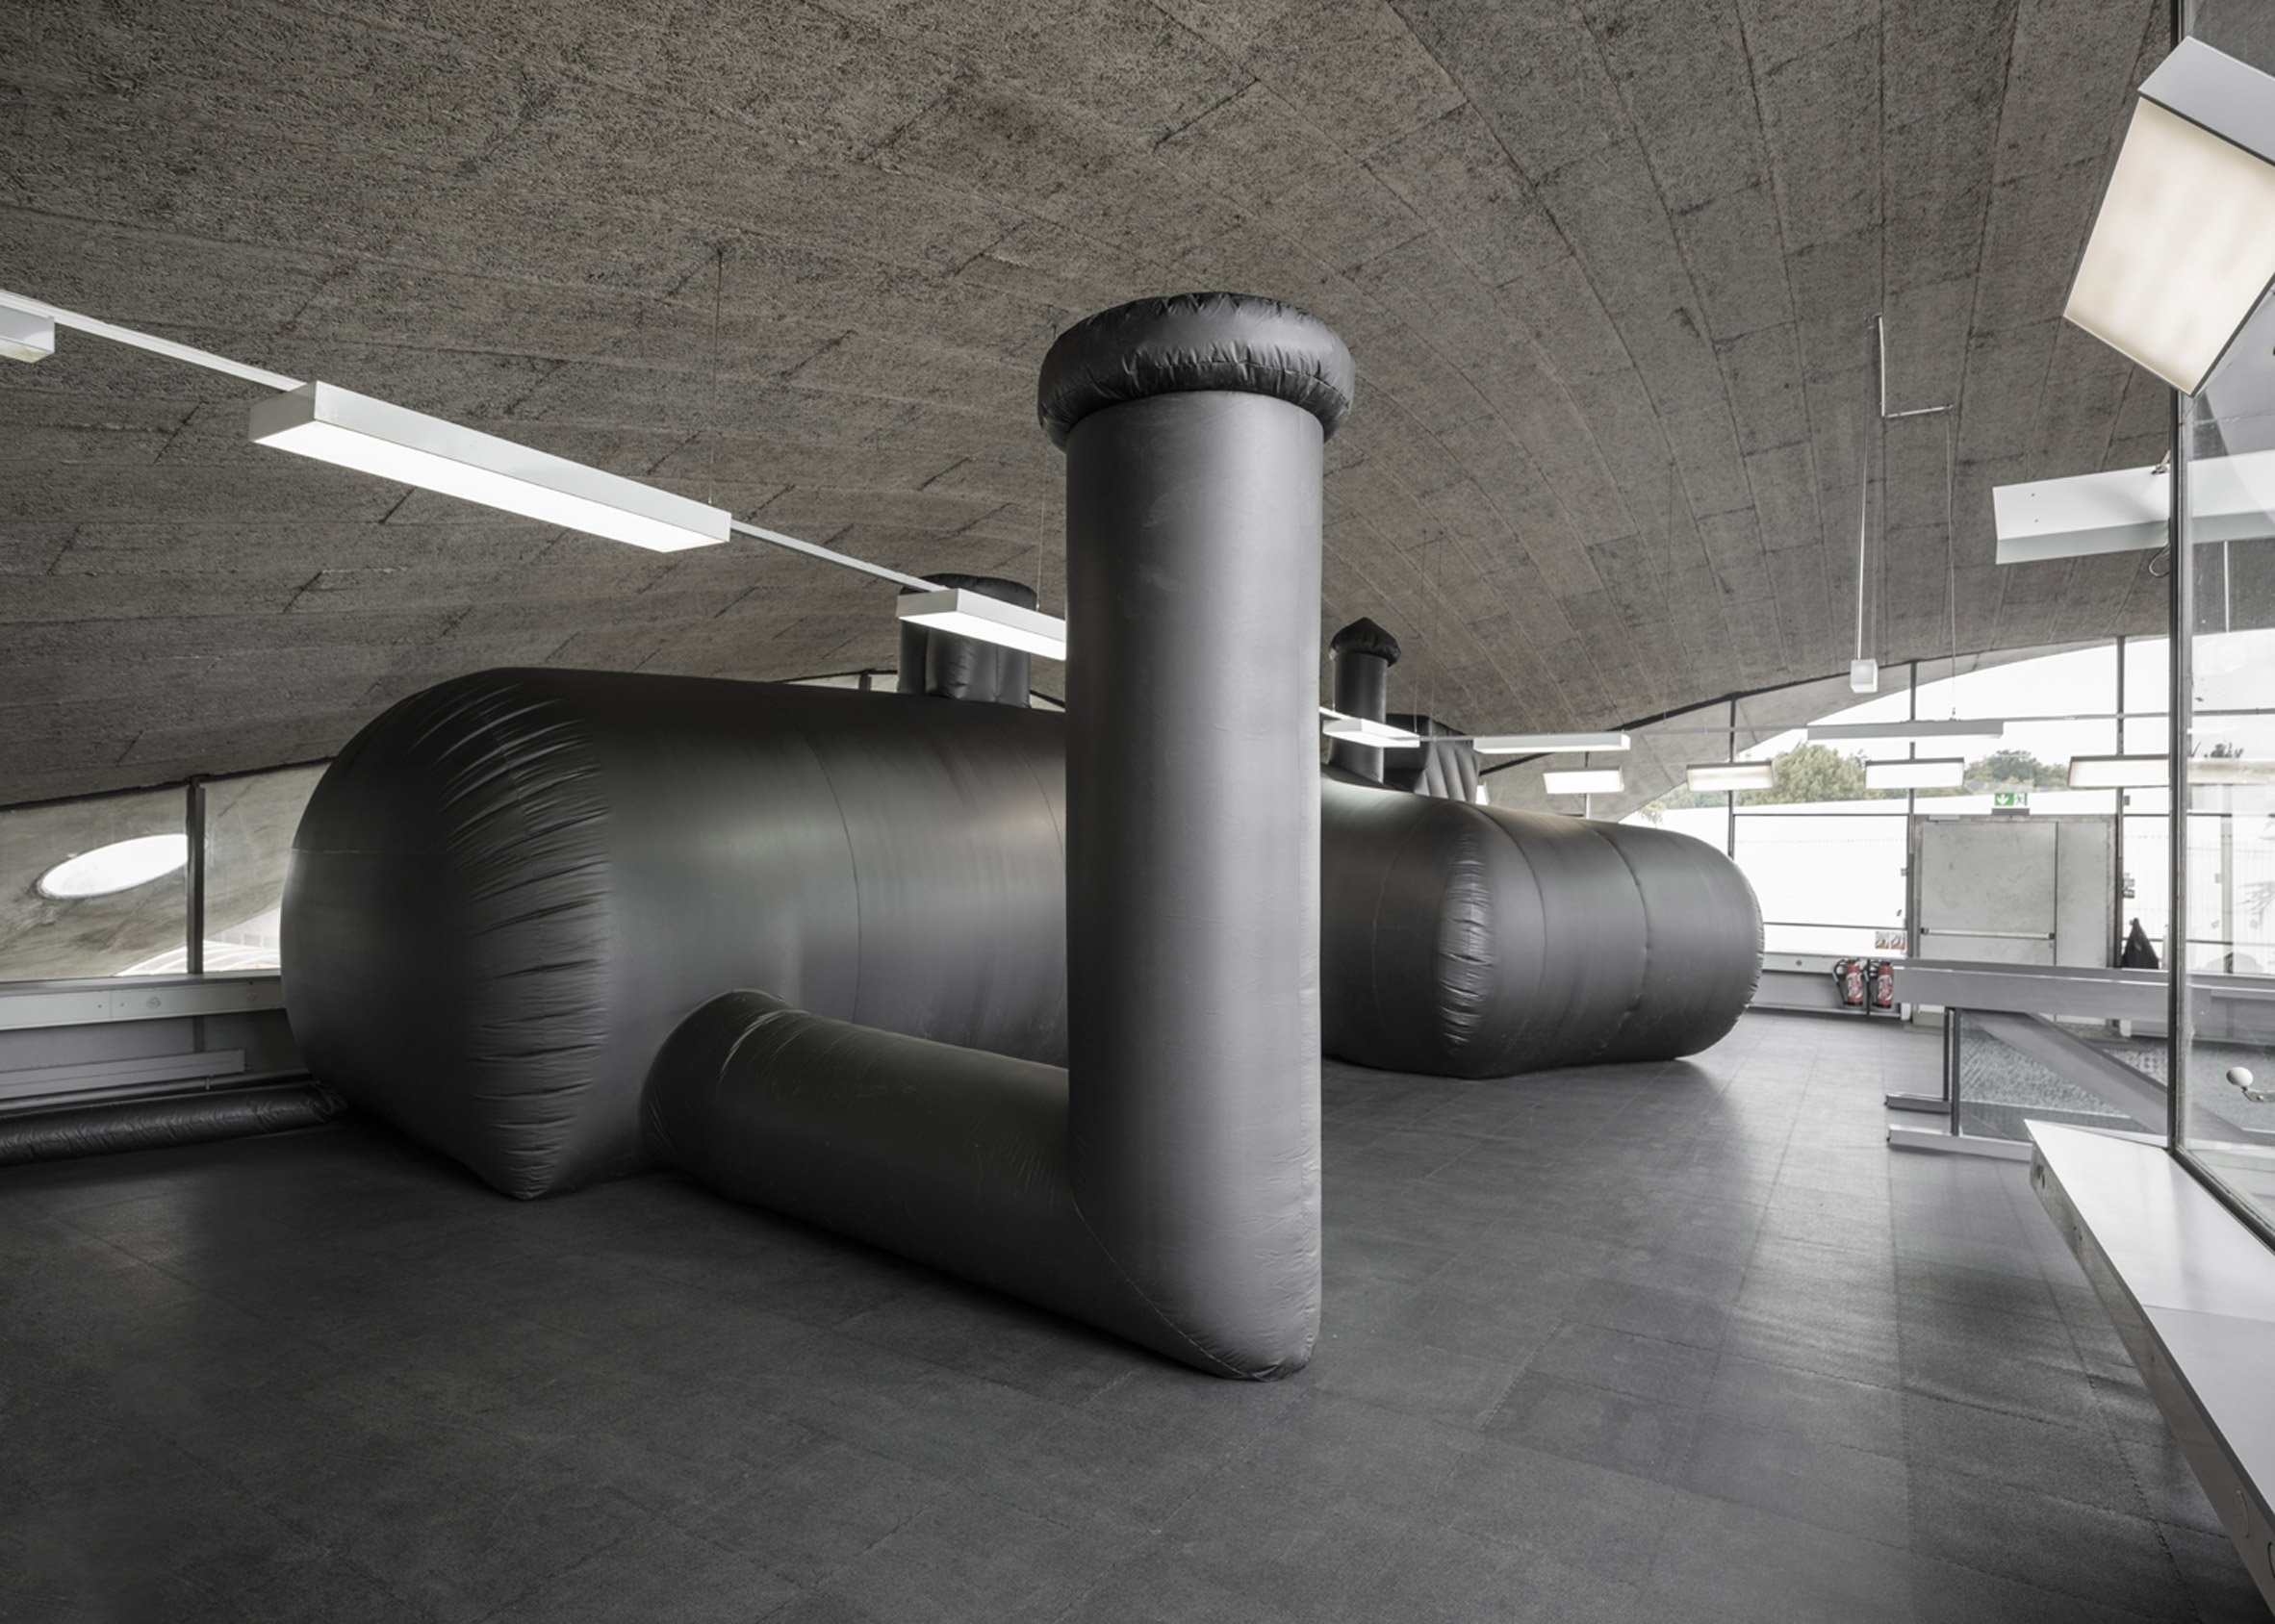 shelter-architecture-black-inflatable-installation-pvc-bureau-a_dezeen_2364_col_1-1